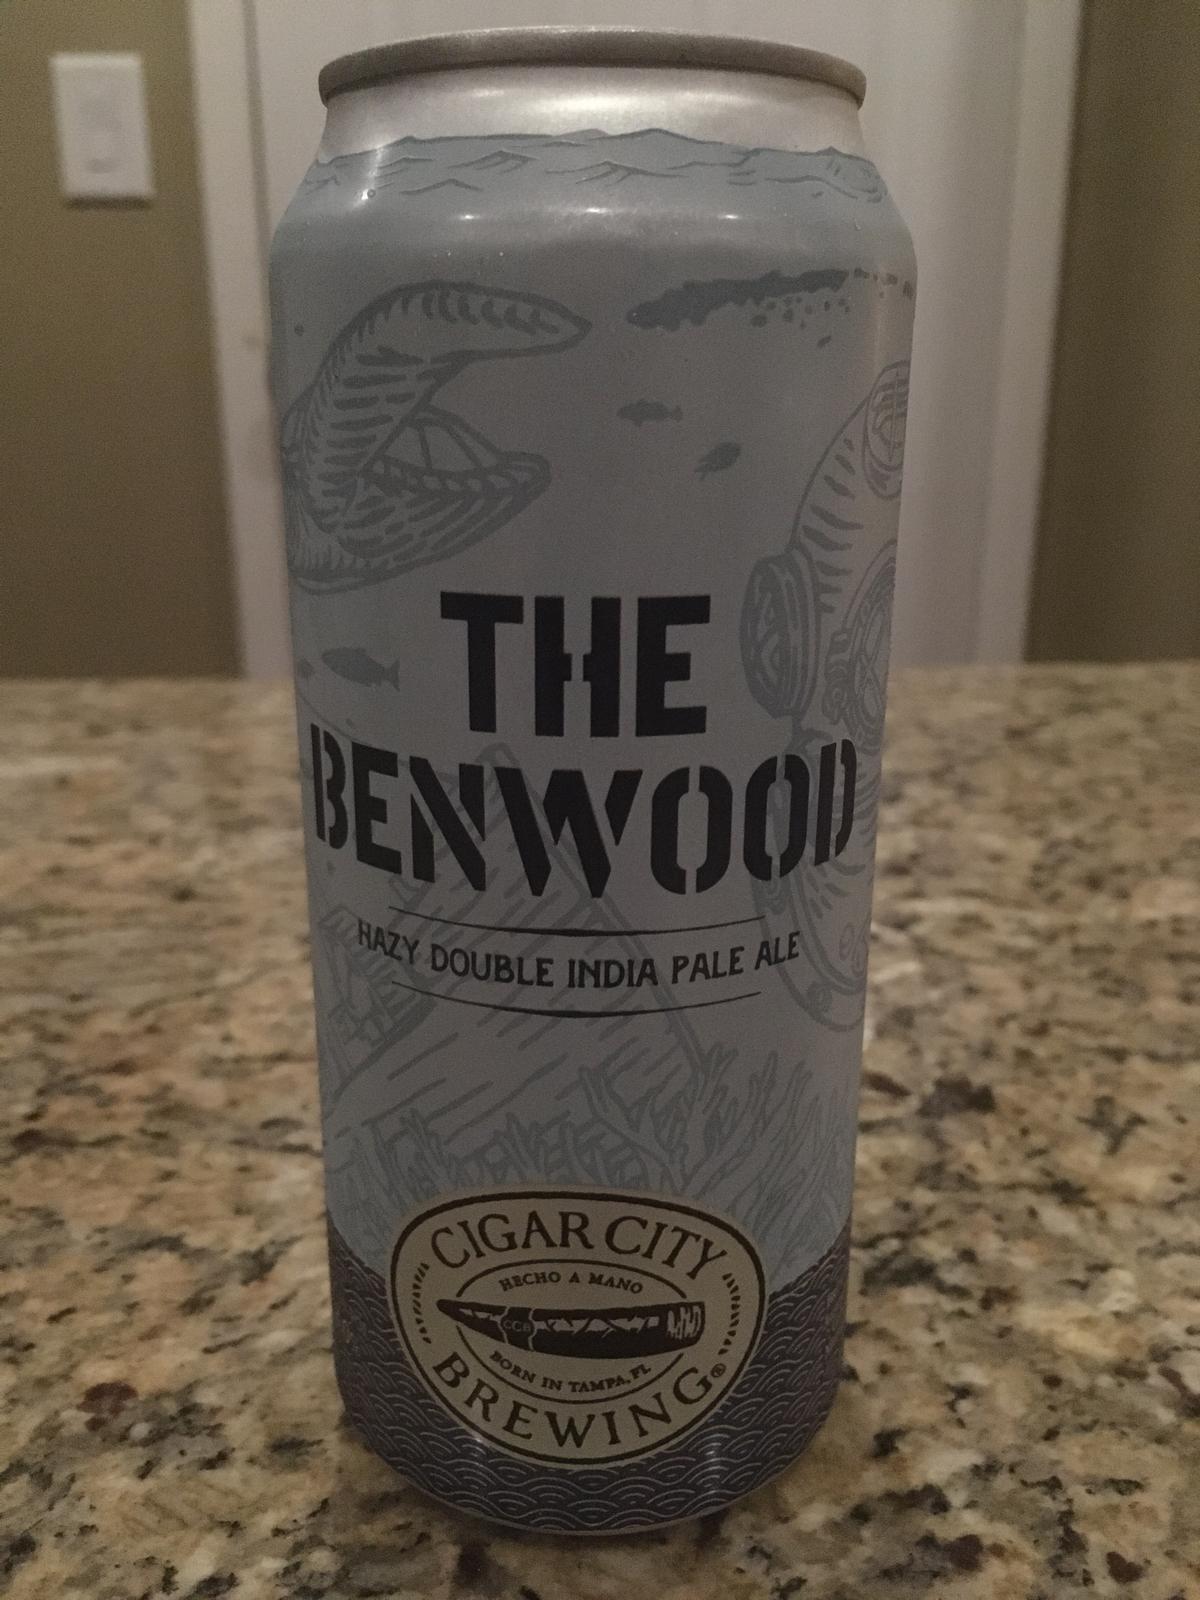 The Benwood